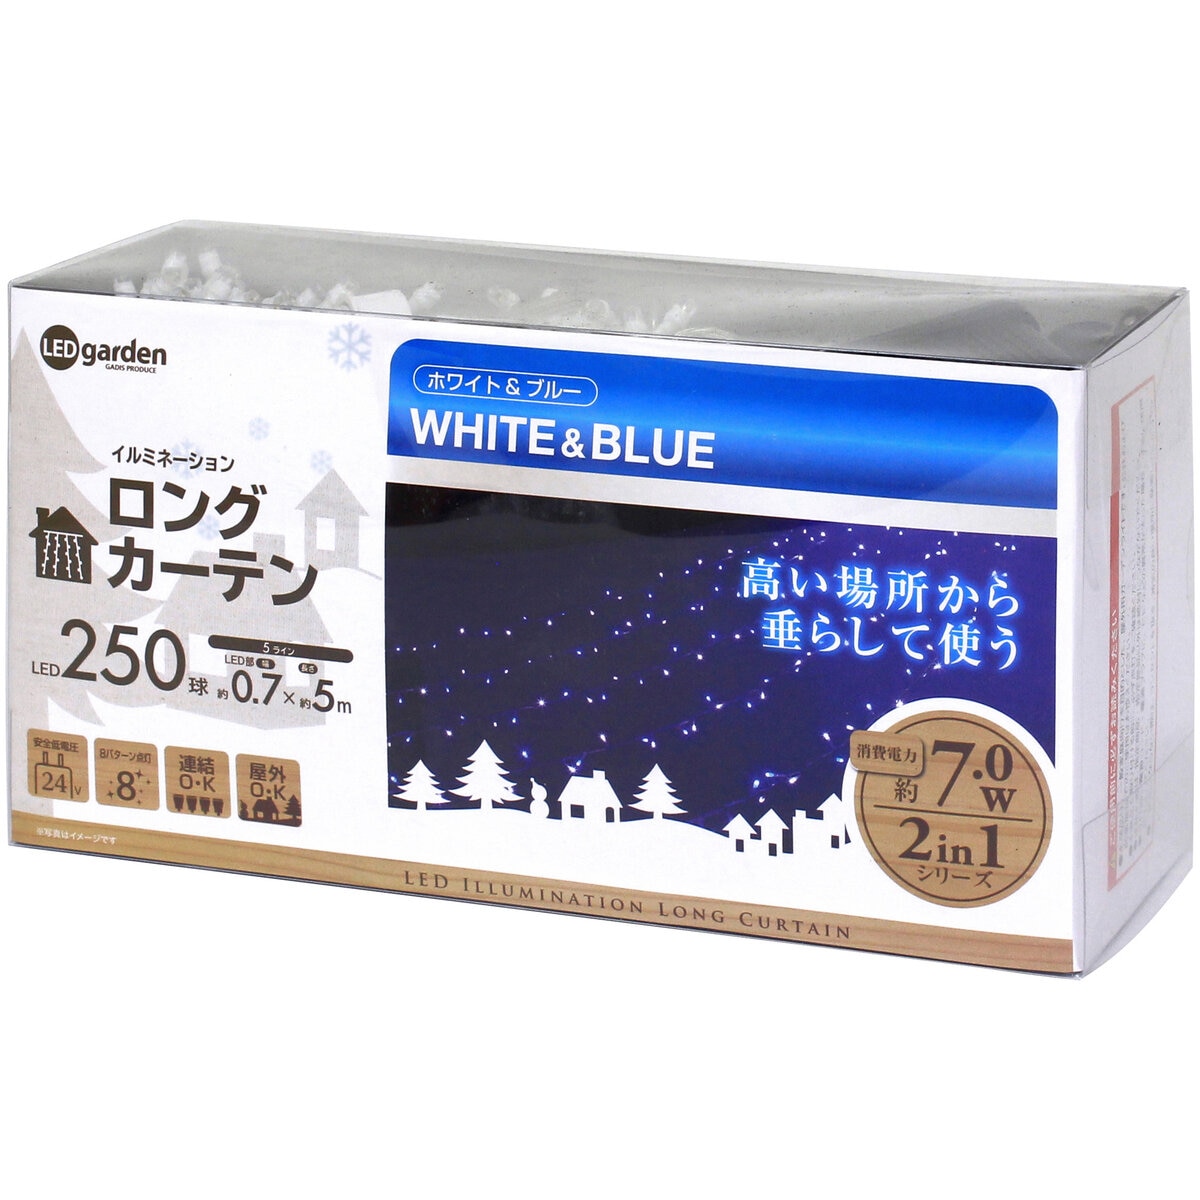 タカショー(Takasho) イルミネーション ロングカーテン 250球 ホワイト ブルー - 2